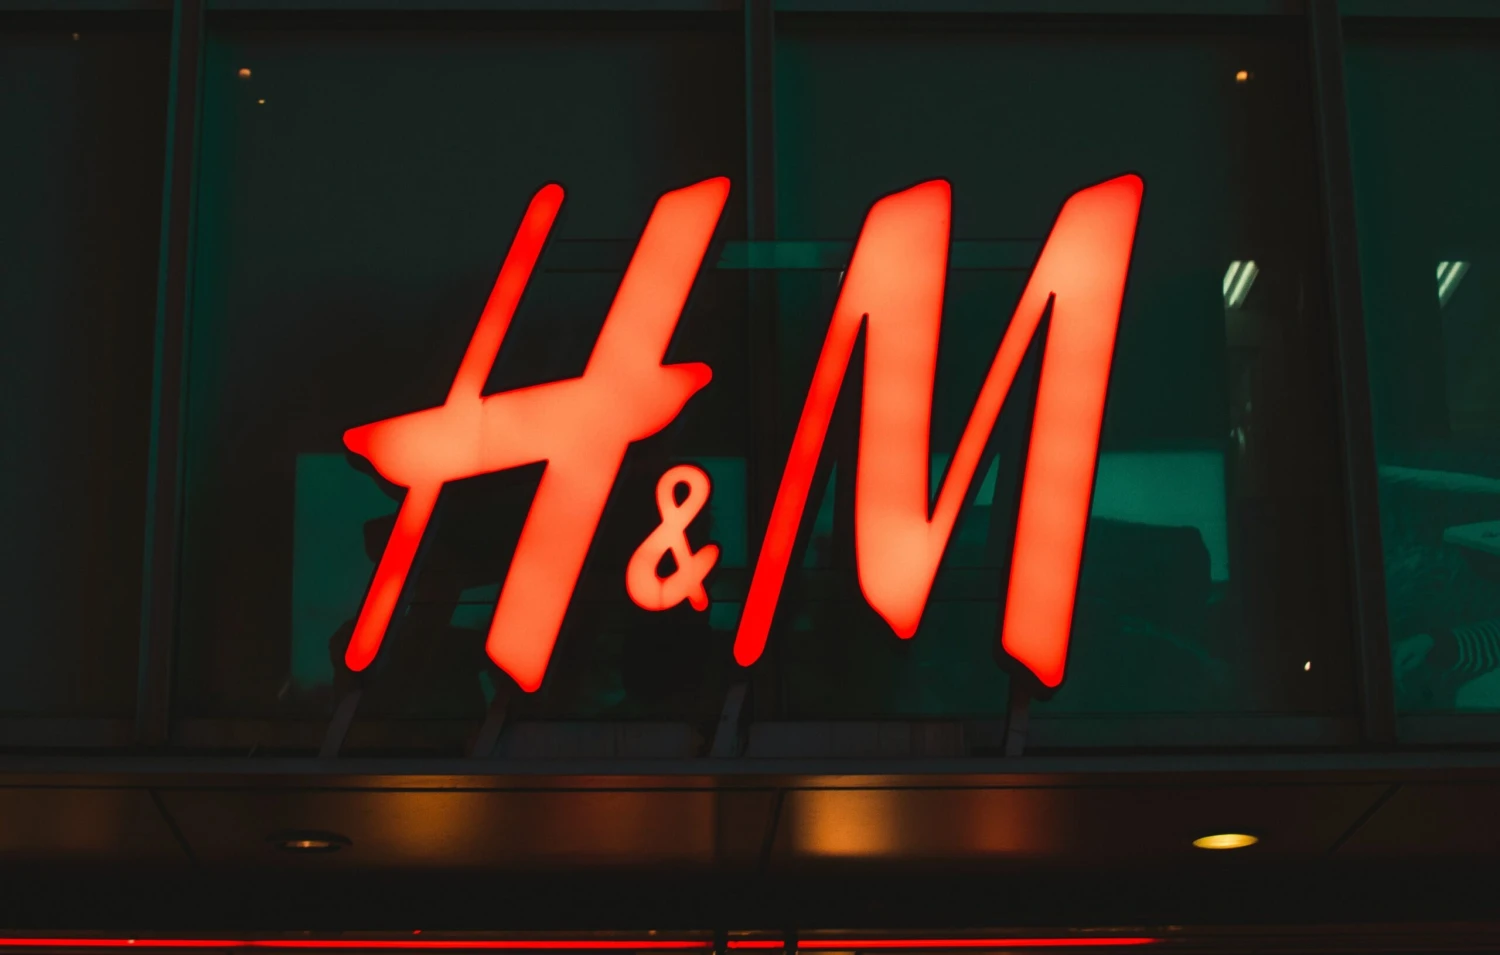 Čtvrtina poboček pryč. H&M plánuje ve Španělsku uzavřít část svých prodejen